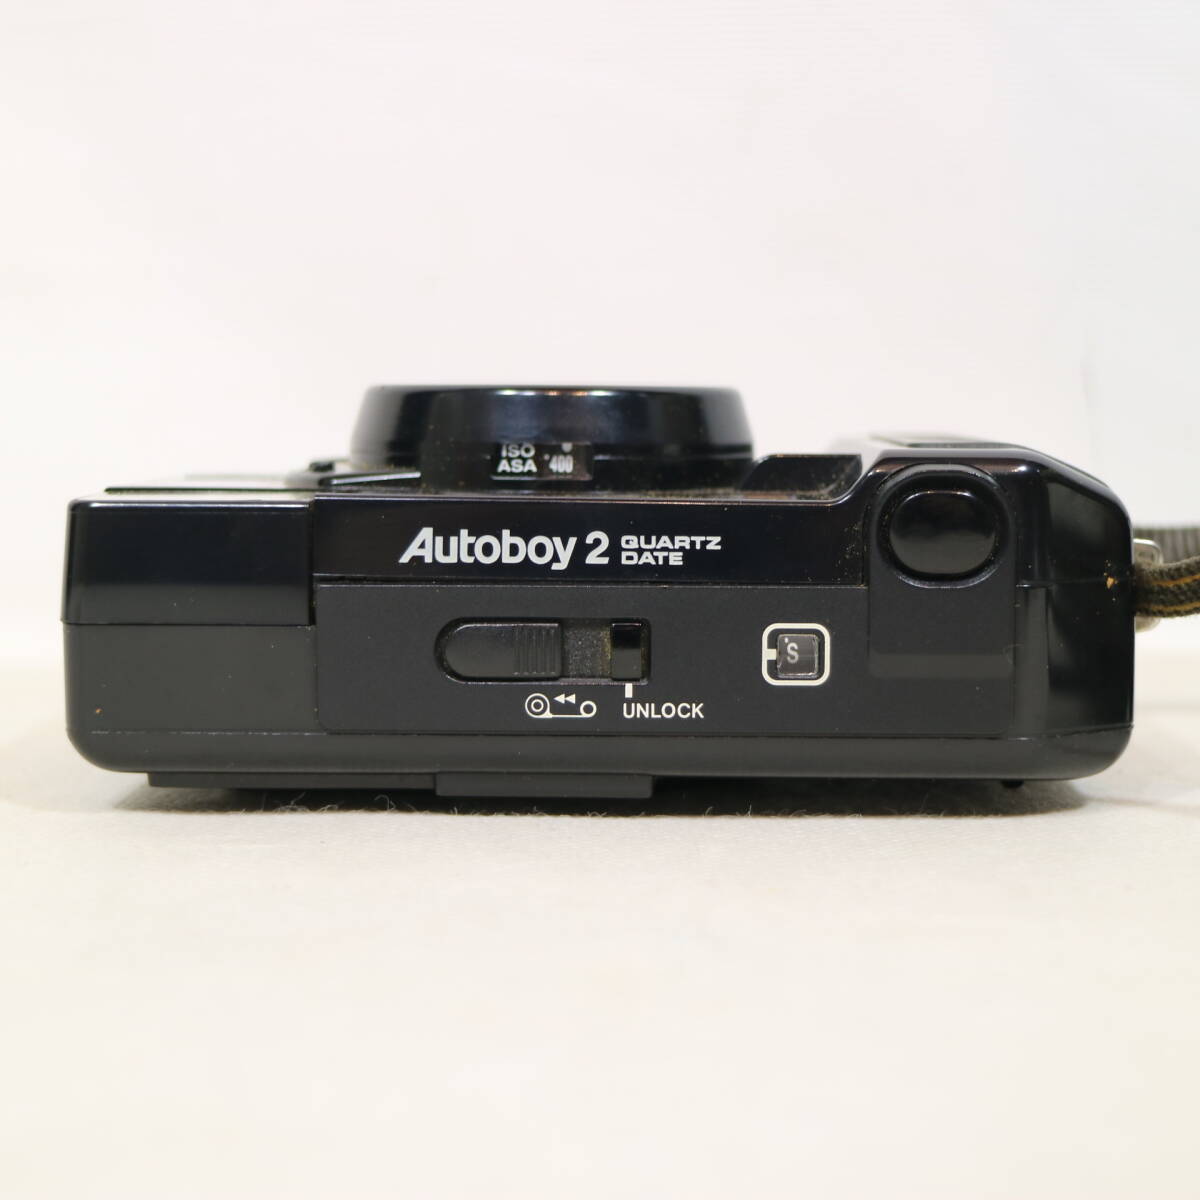 CANON キャノン Autoboy2 QUARTZ DATE オートボーイ クォーツデート 35mmカメラ フィルムカメラ 38mmレンズ ケース付 1759095 現状品の画像6